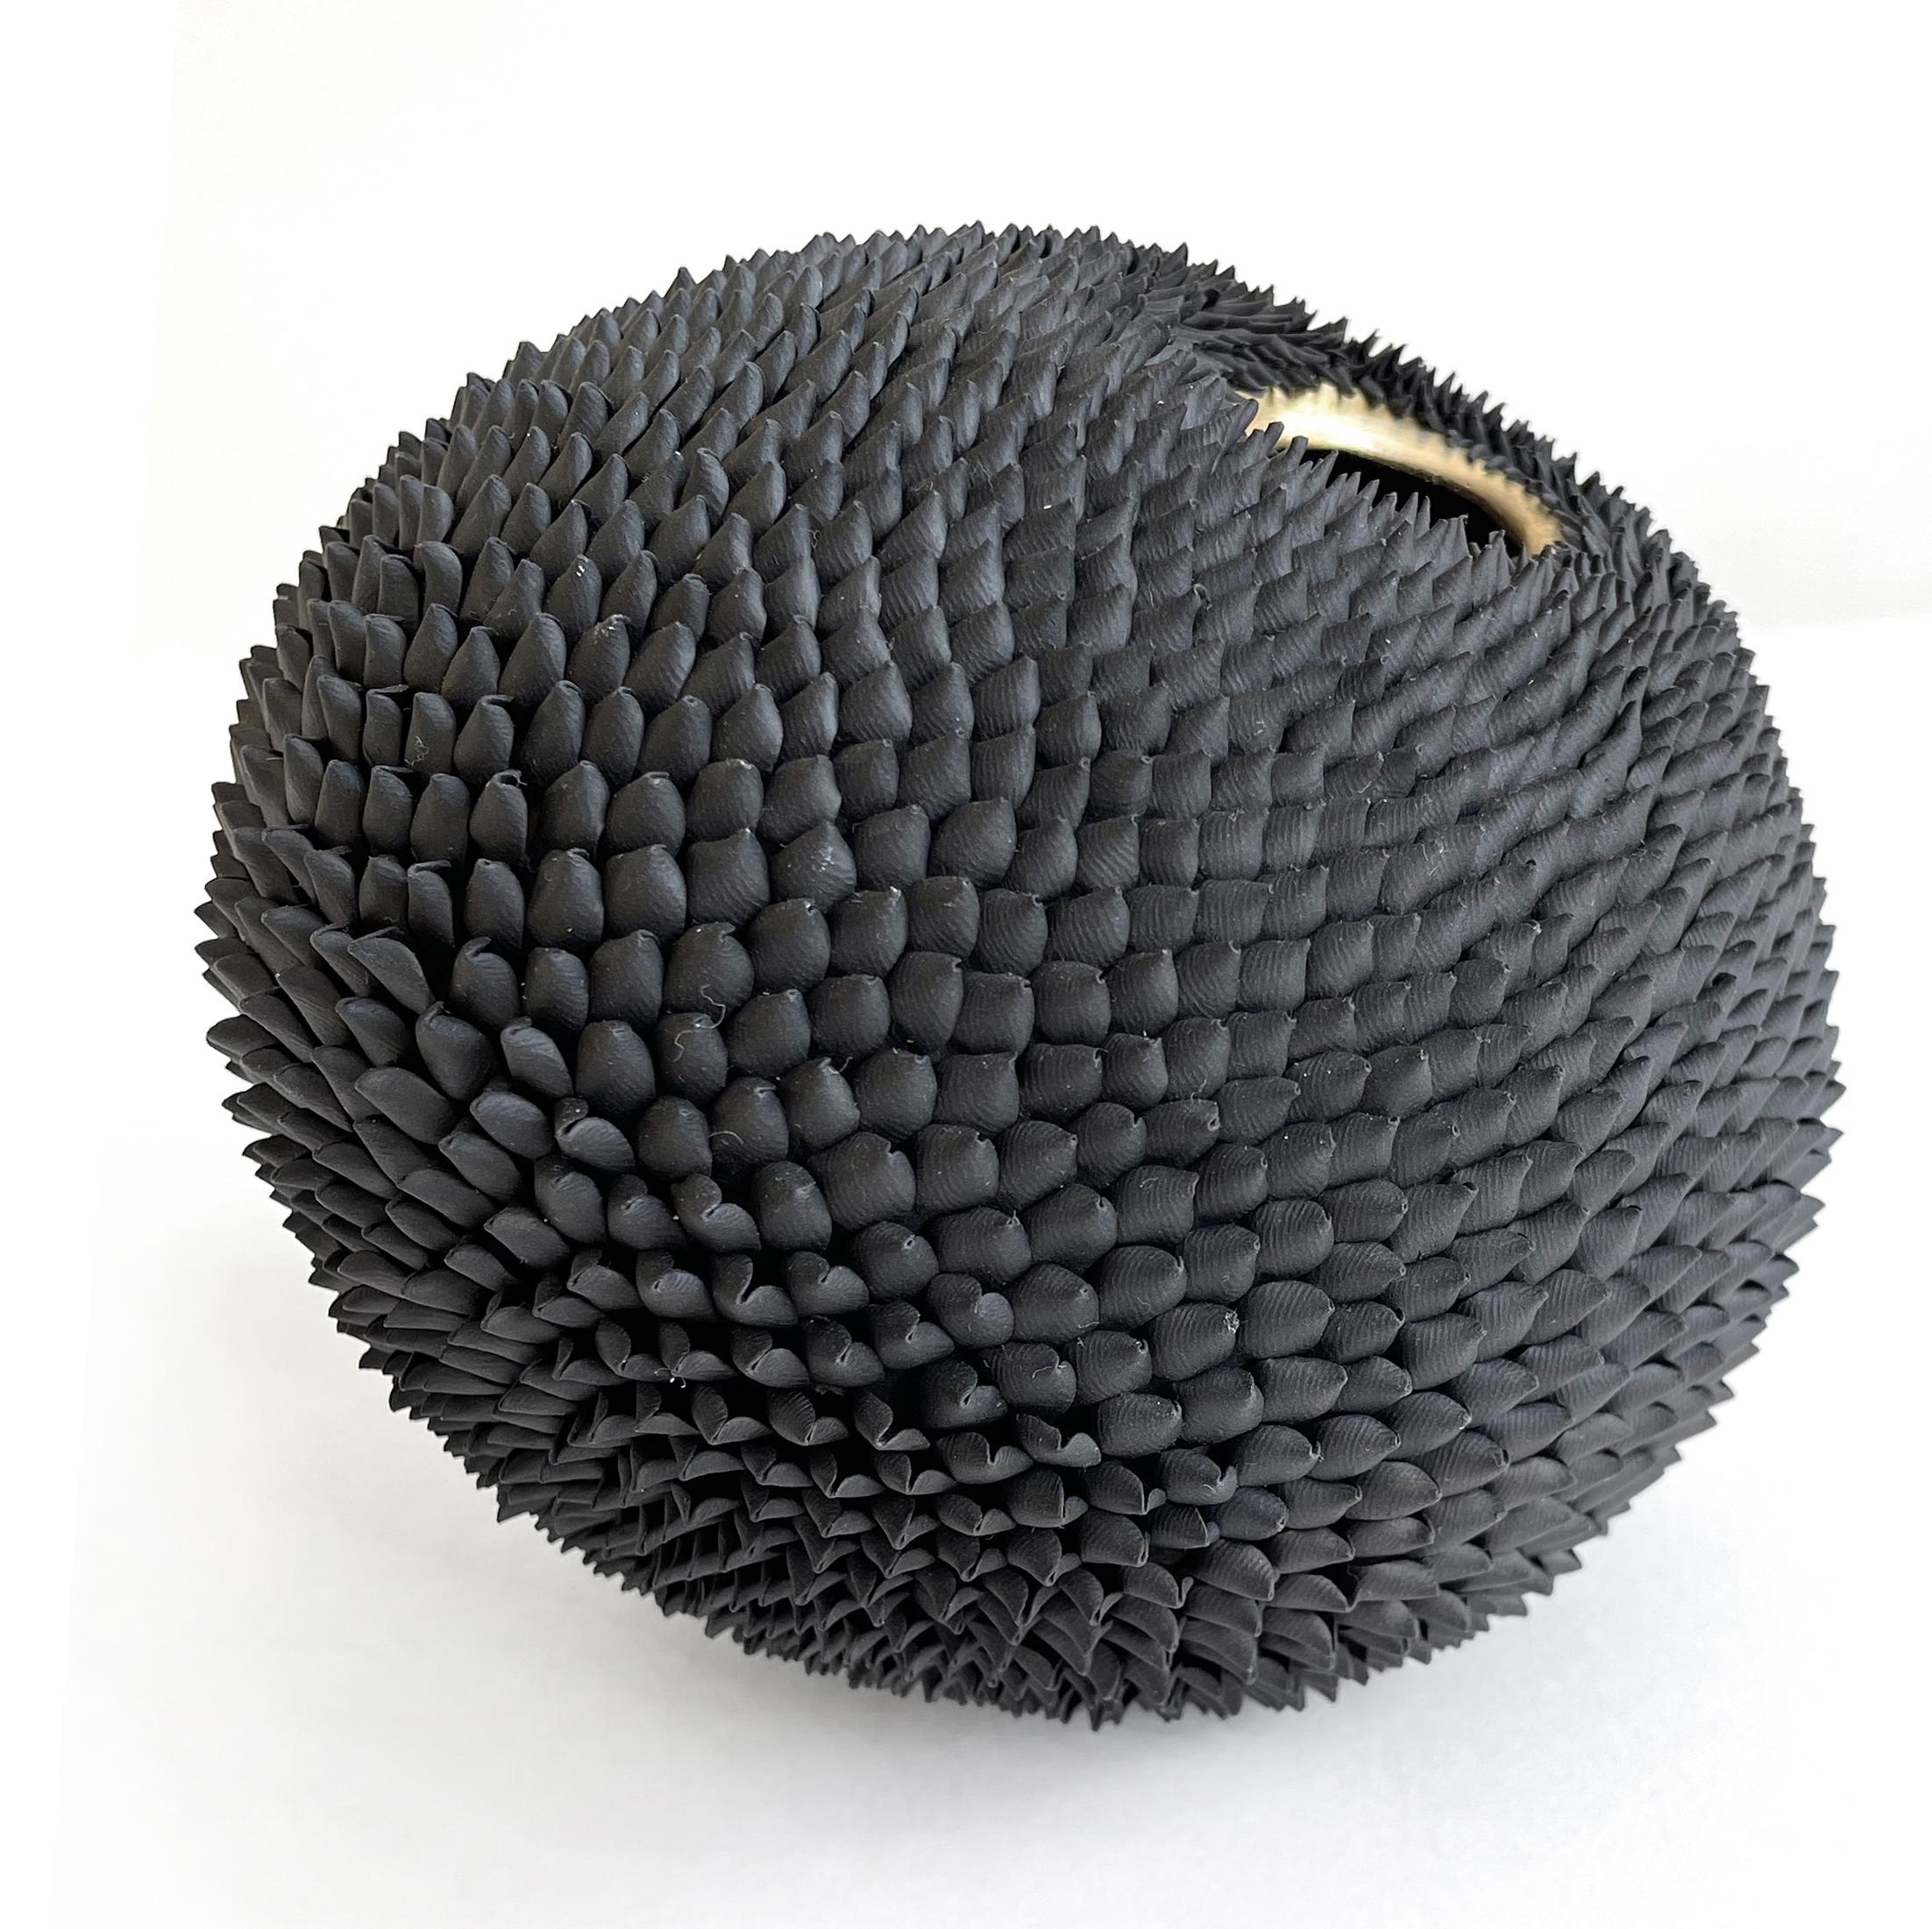 Graine noire - petite sculpture autoportante en argile sur laiton